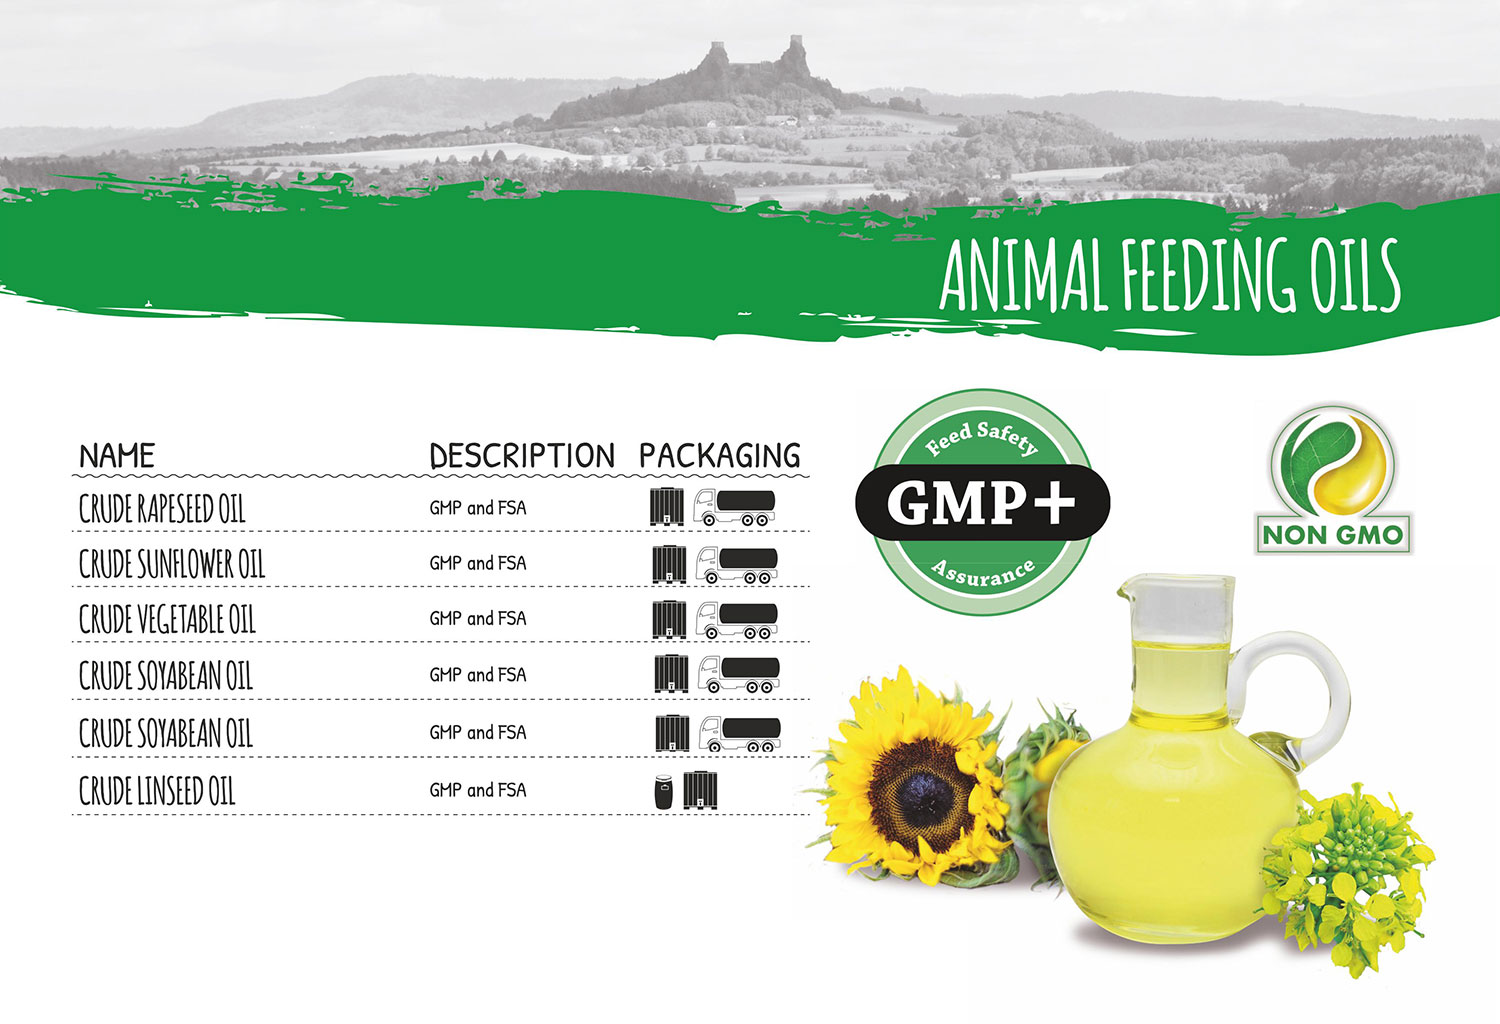 Animal feeding oils